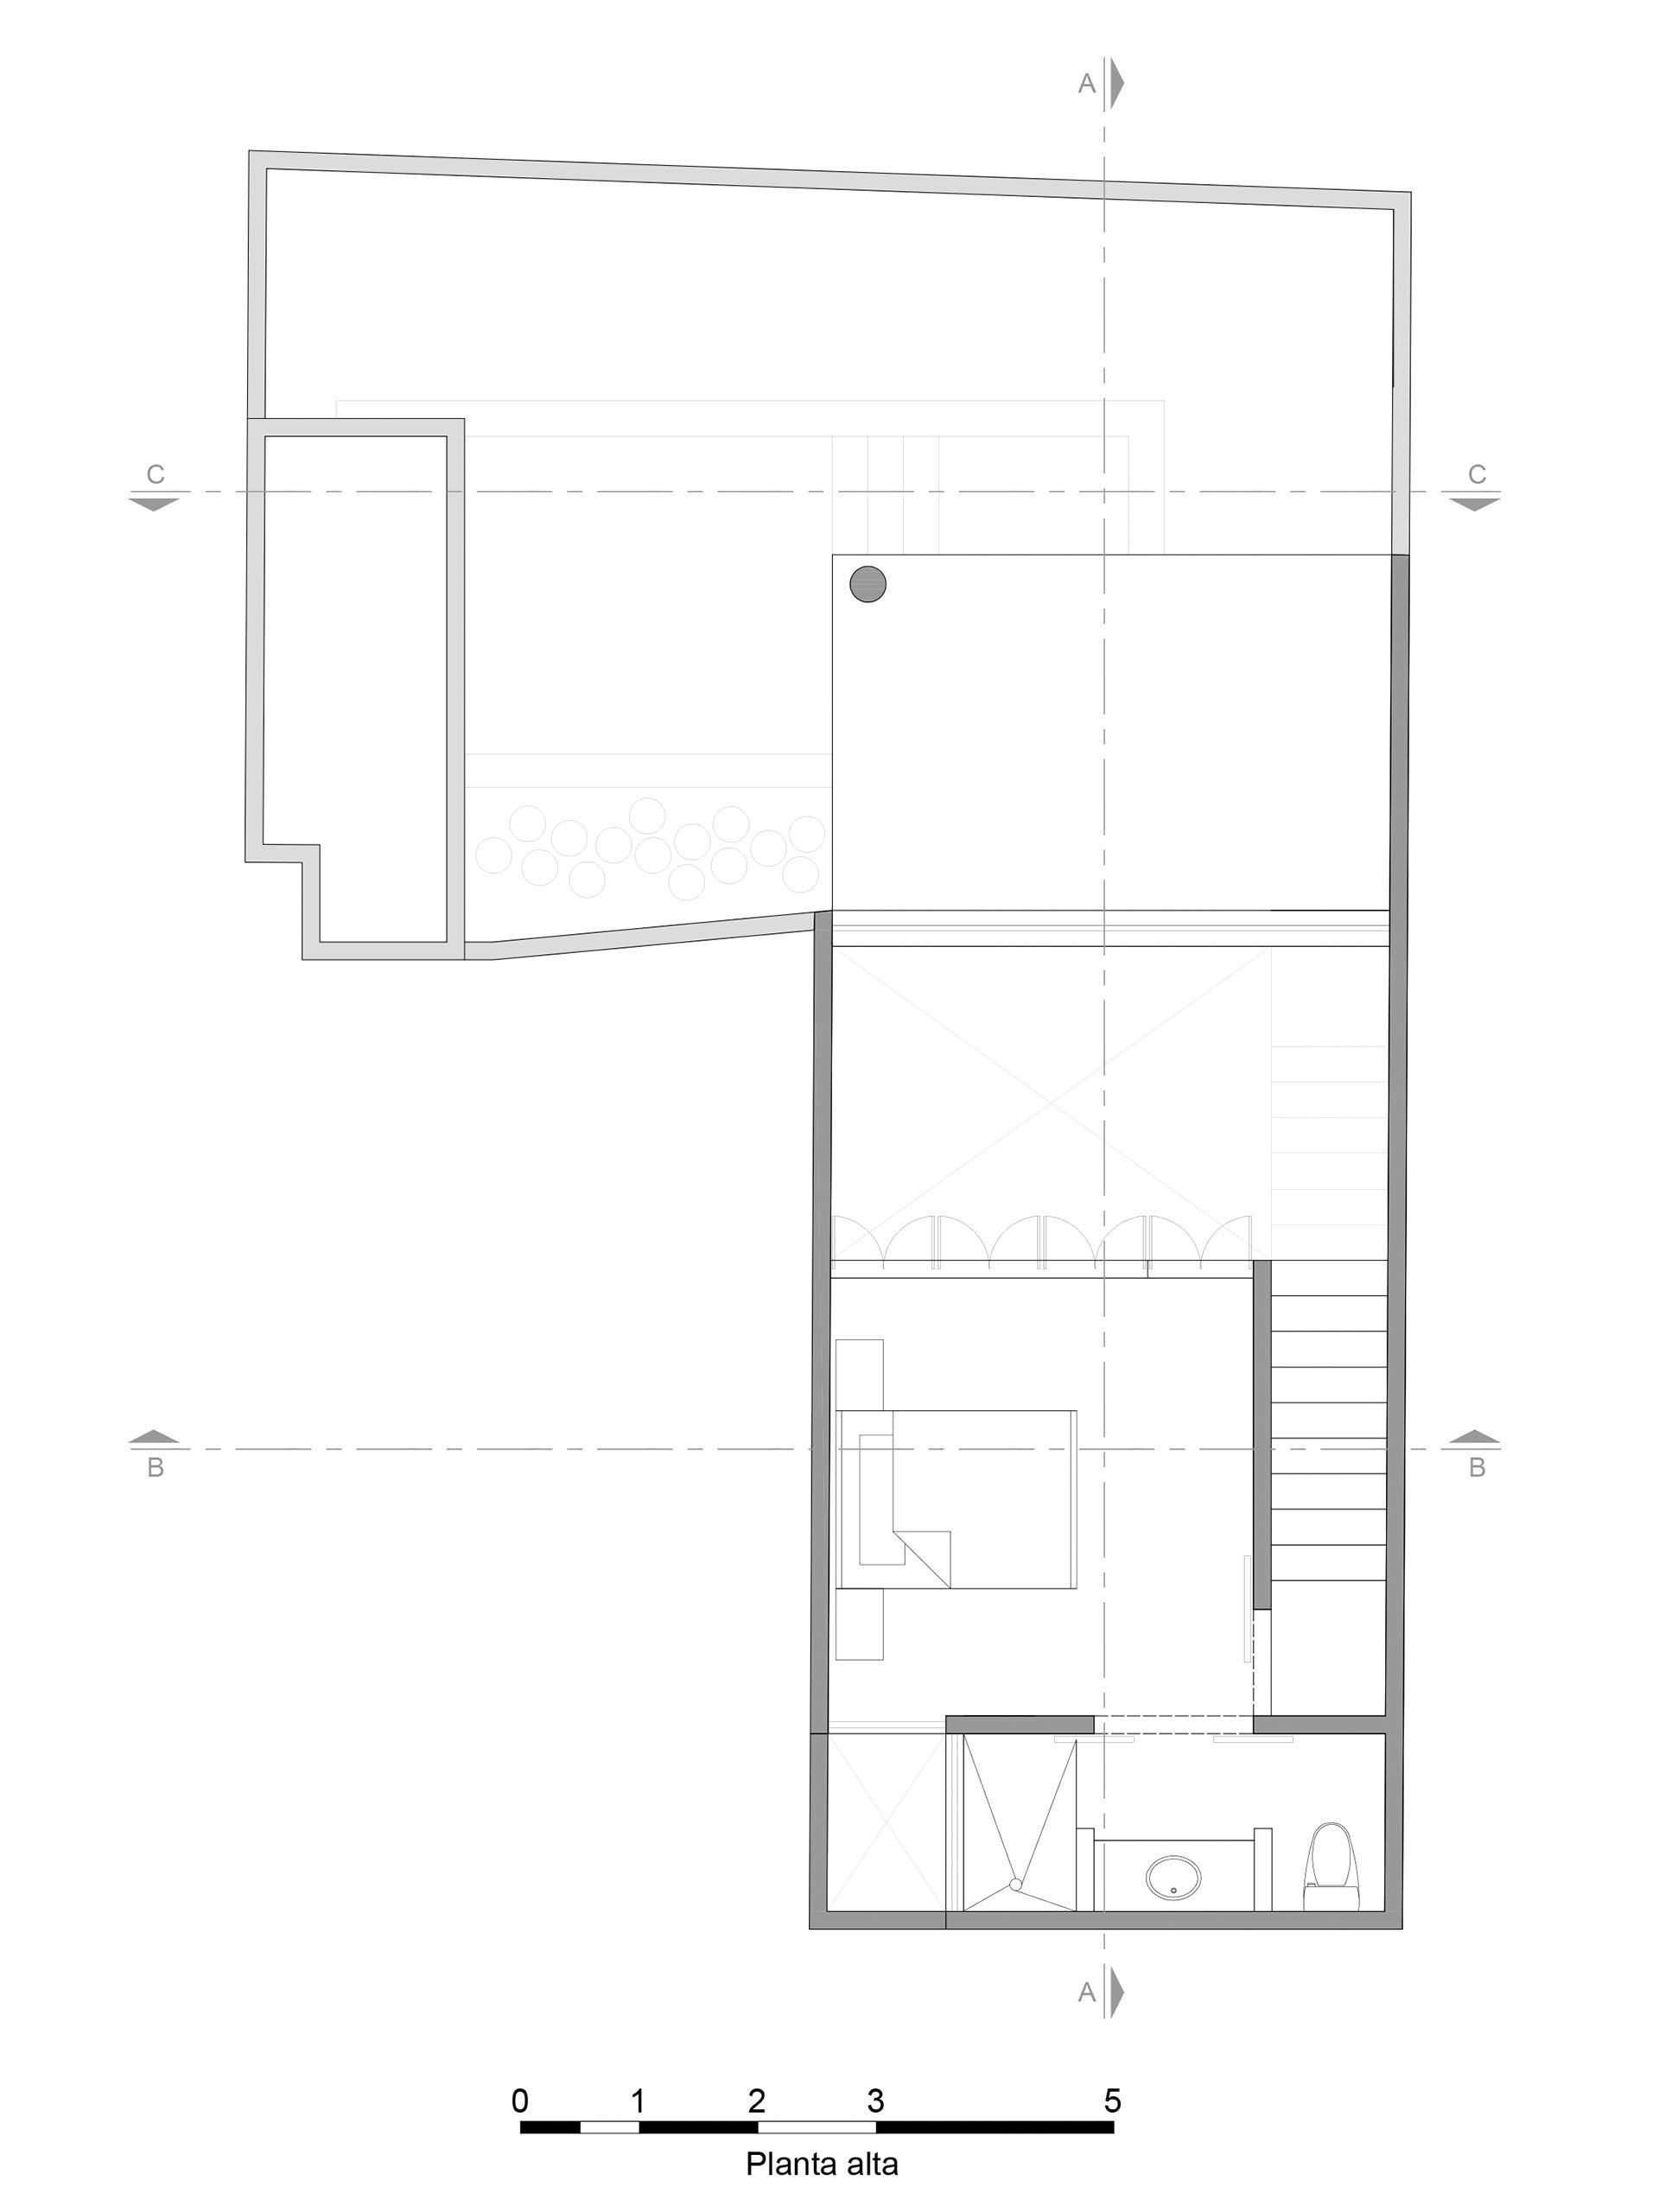 План второго этажа, который включает в себя одноместную спальню и ванную комнату.